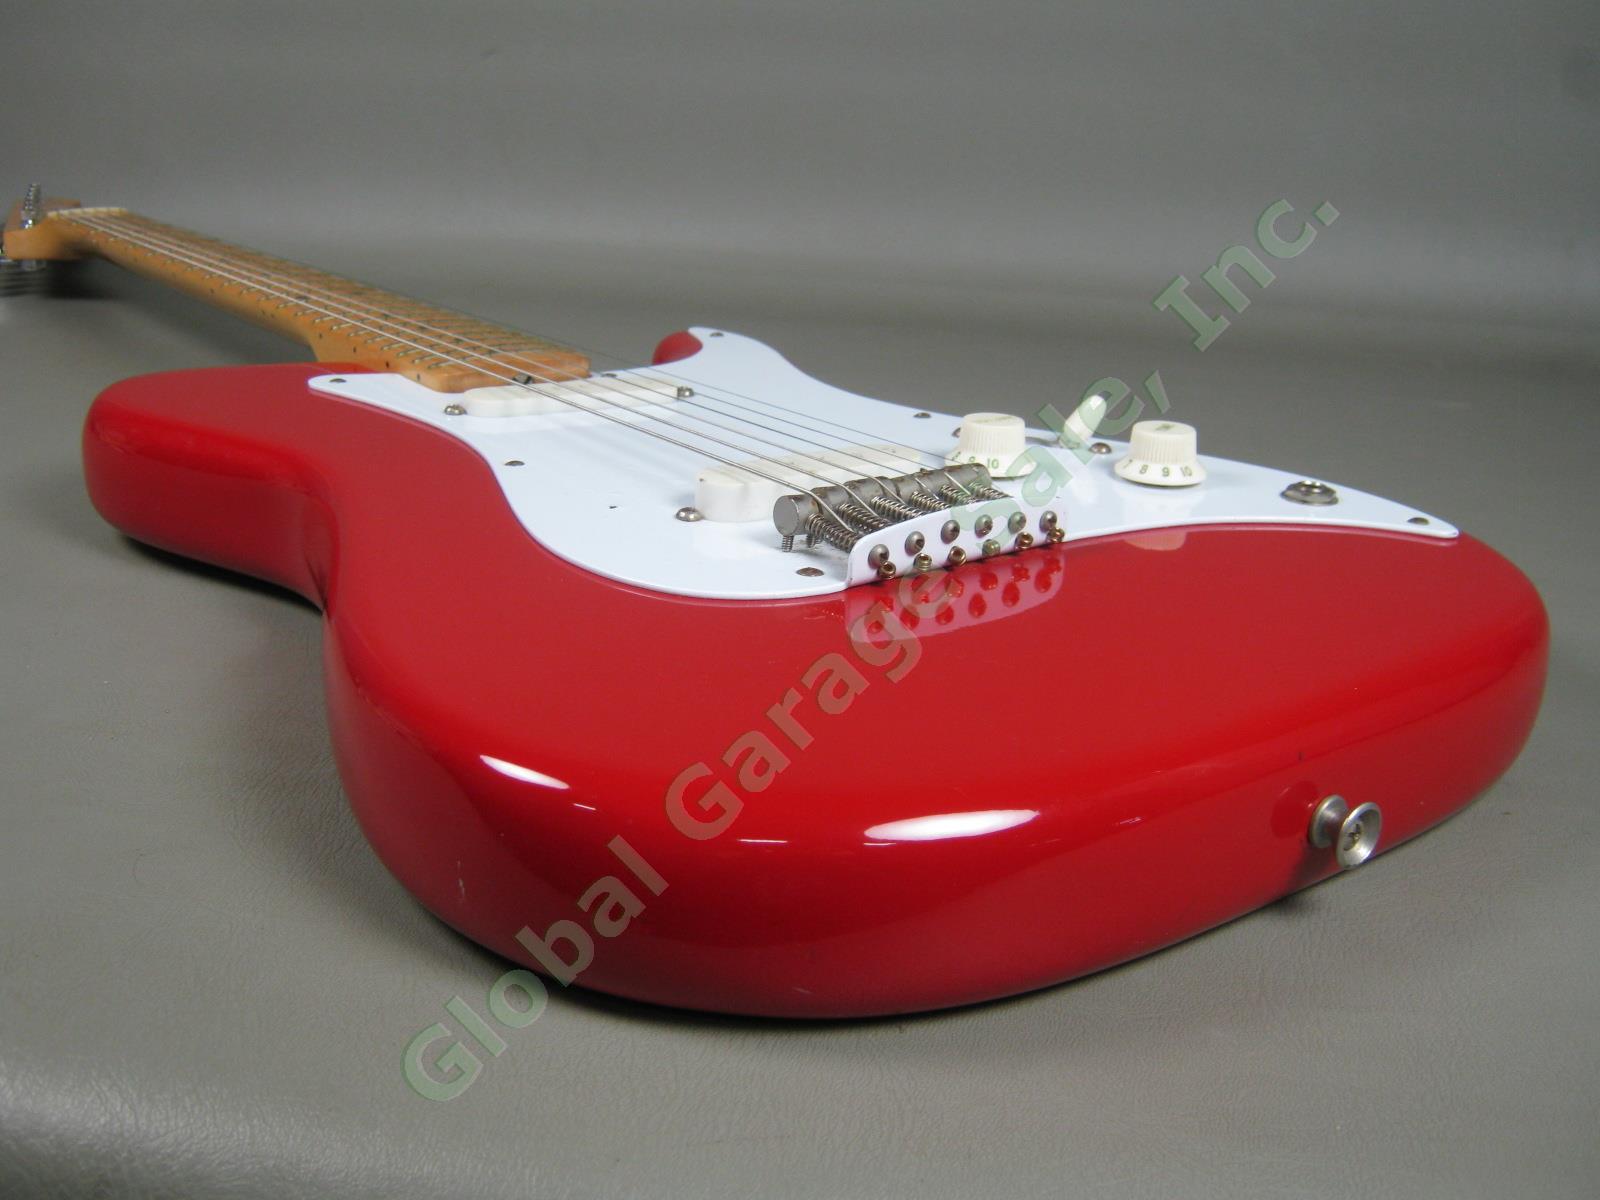 Vtg 1981 Fender Bullet Electric Guitar w/Case Telecaster Neck Mustang Pickups NR 8